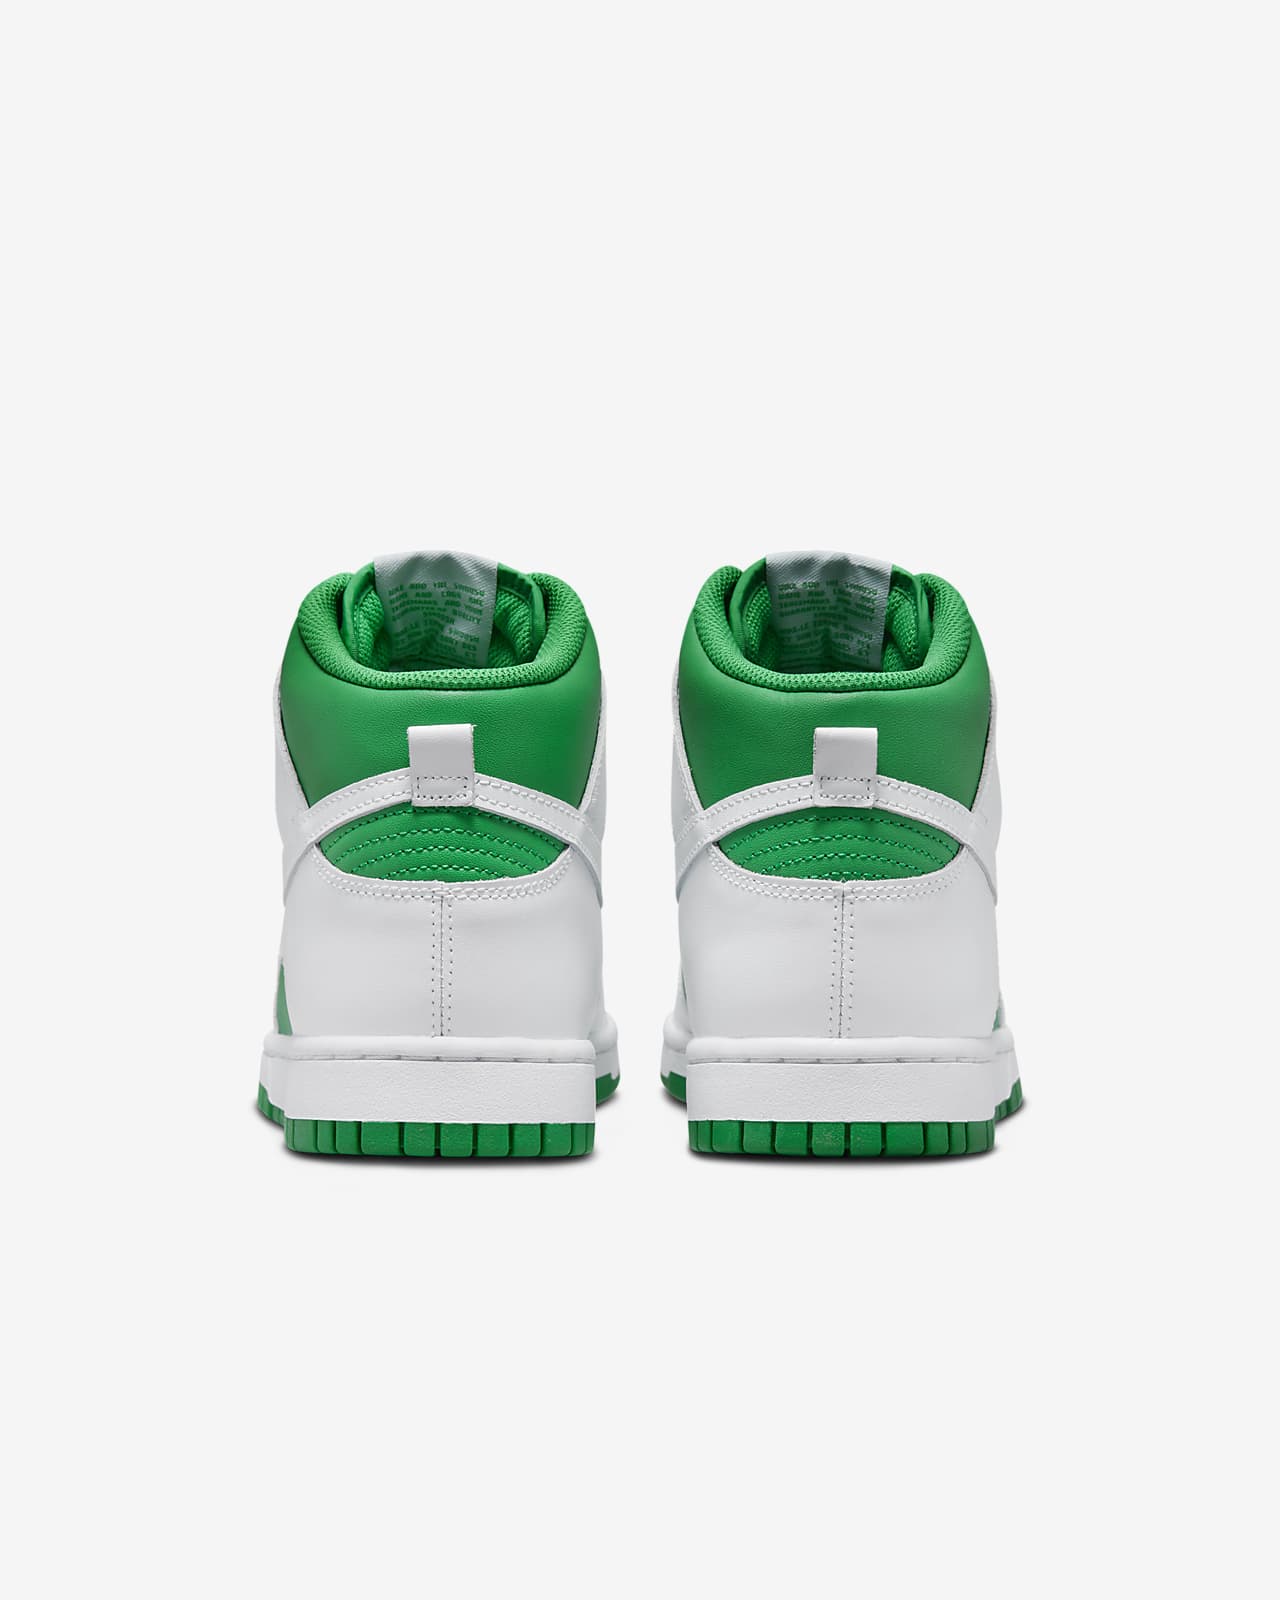 Nike Dunk High Celtic & White On Feet Sneaker Review